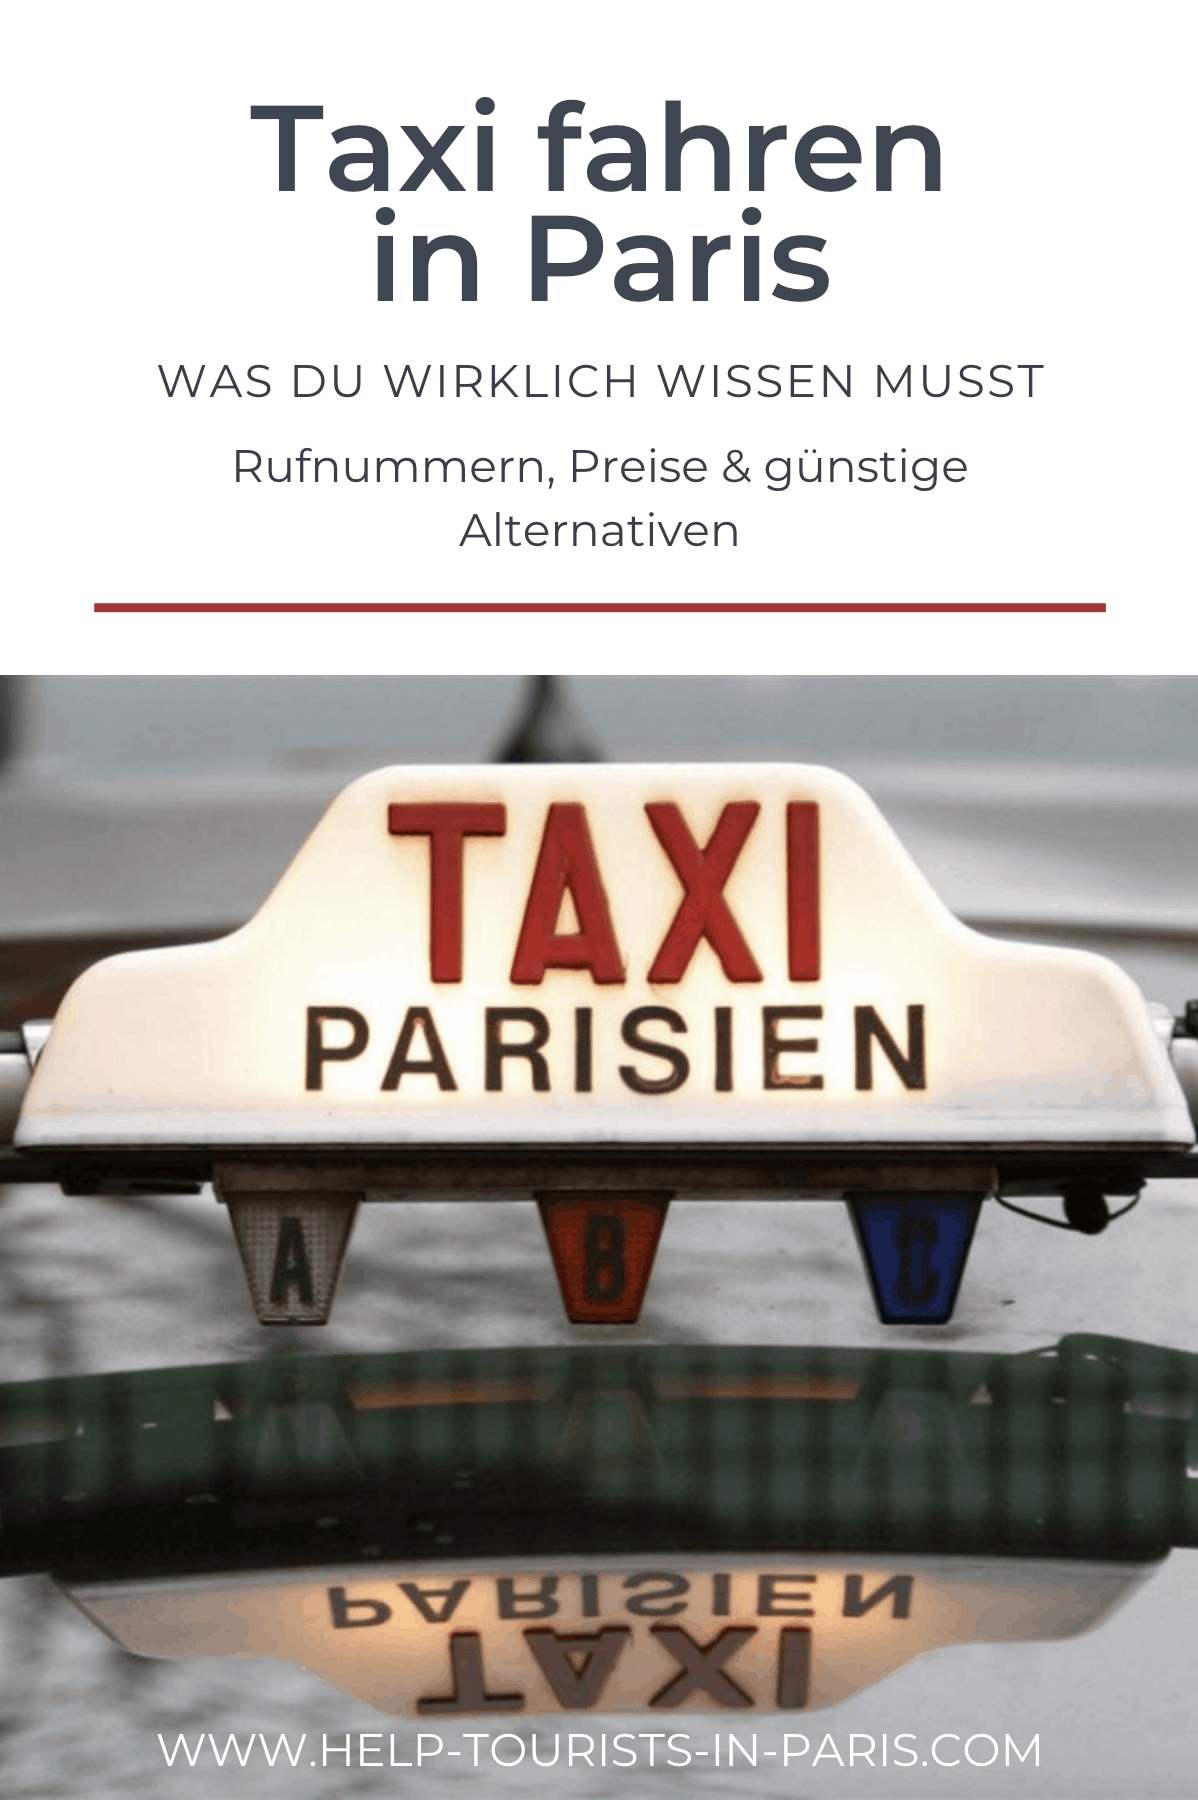 Taxi fahren in Paris